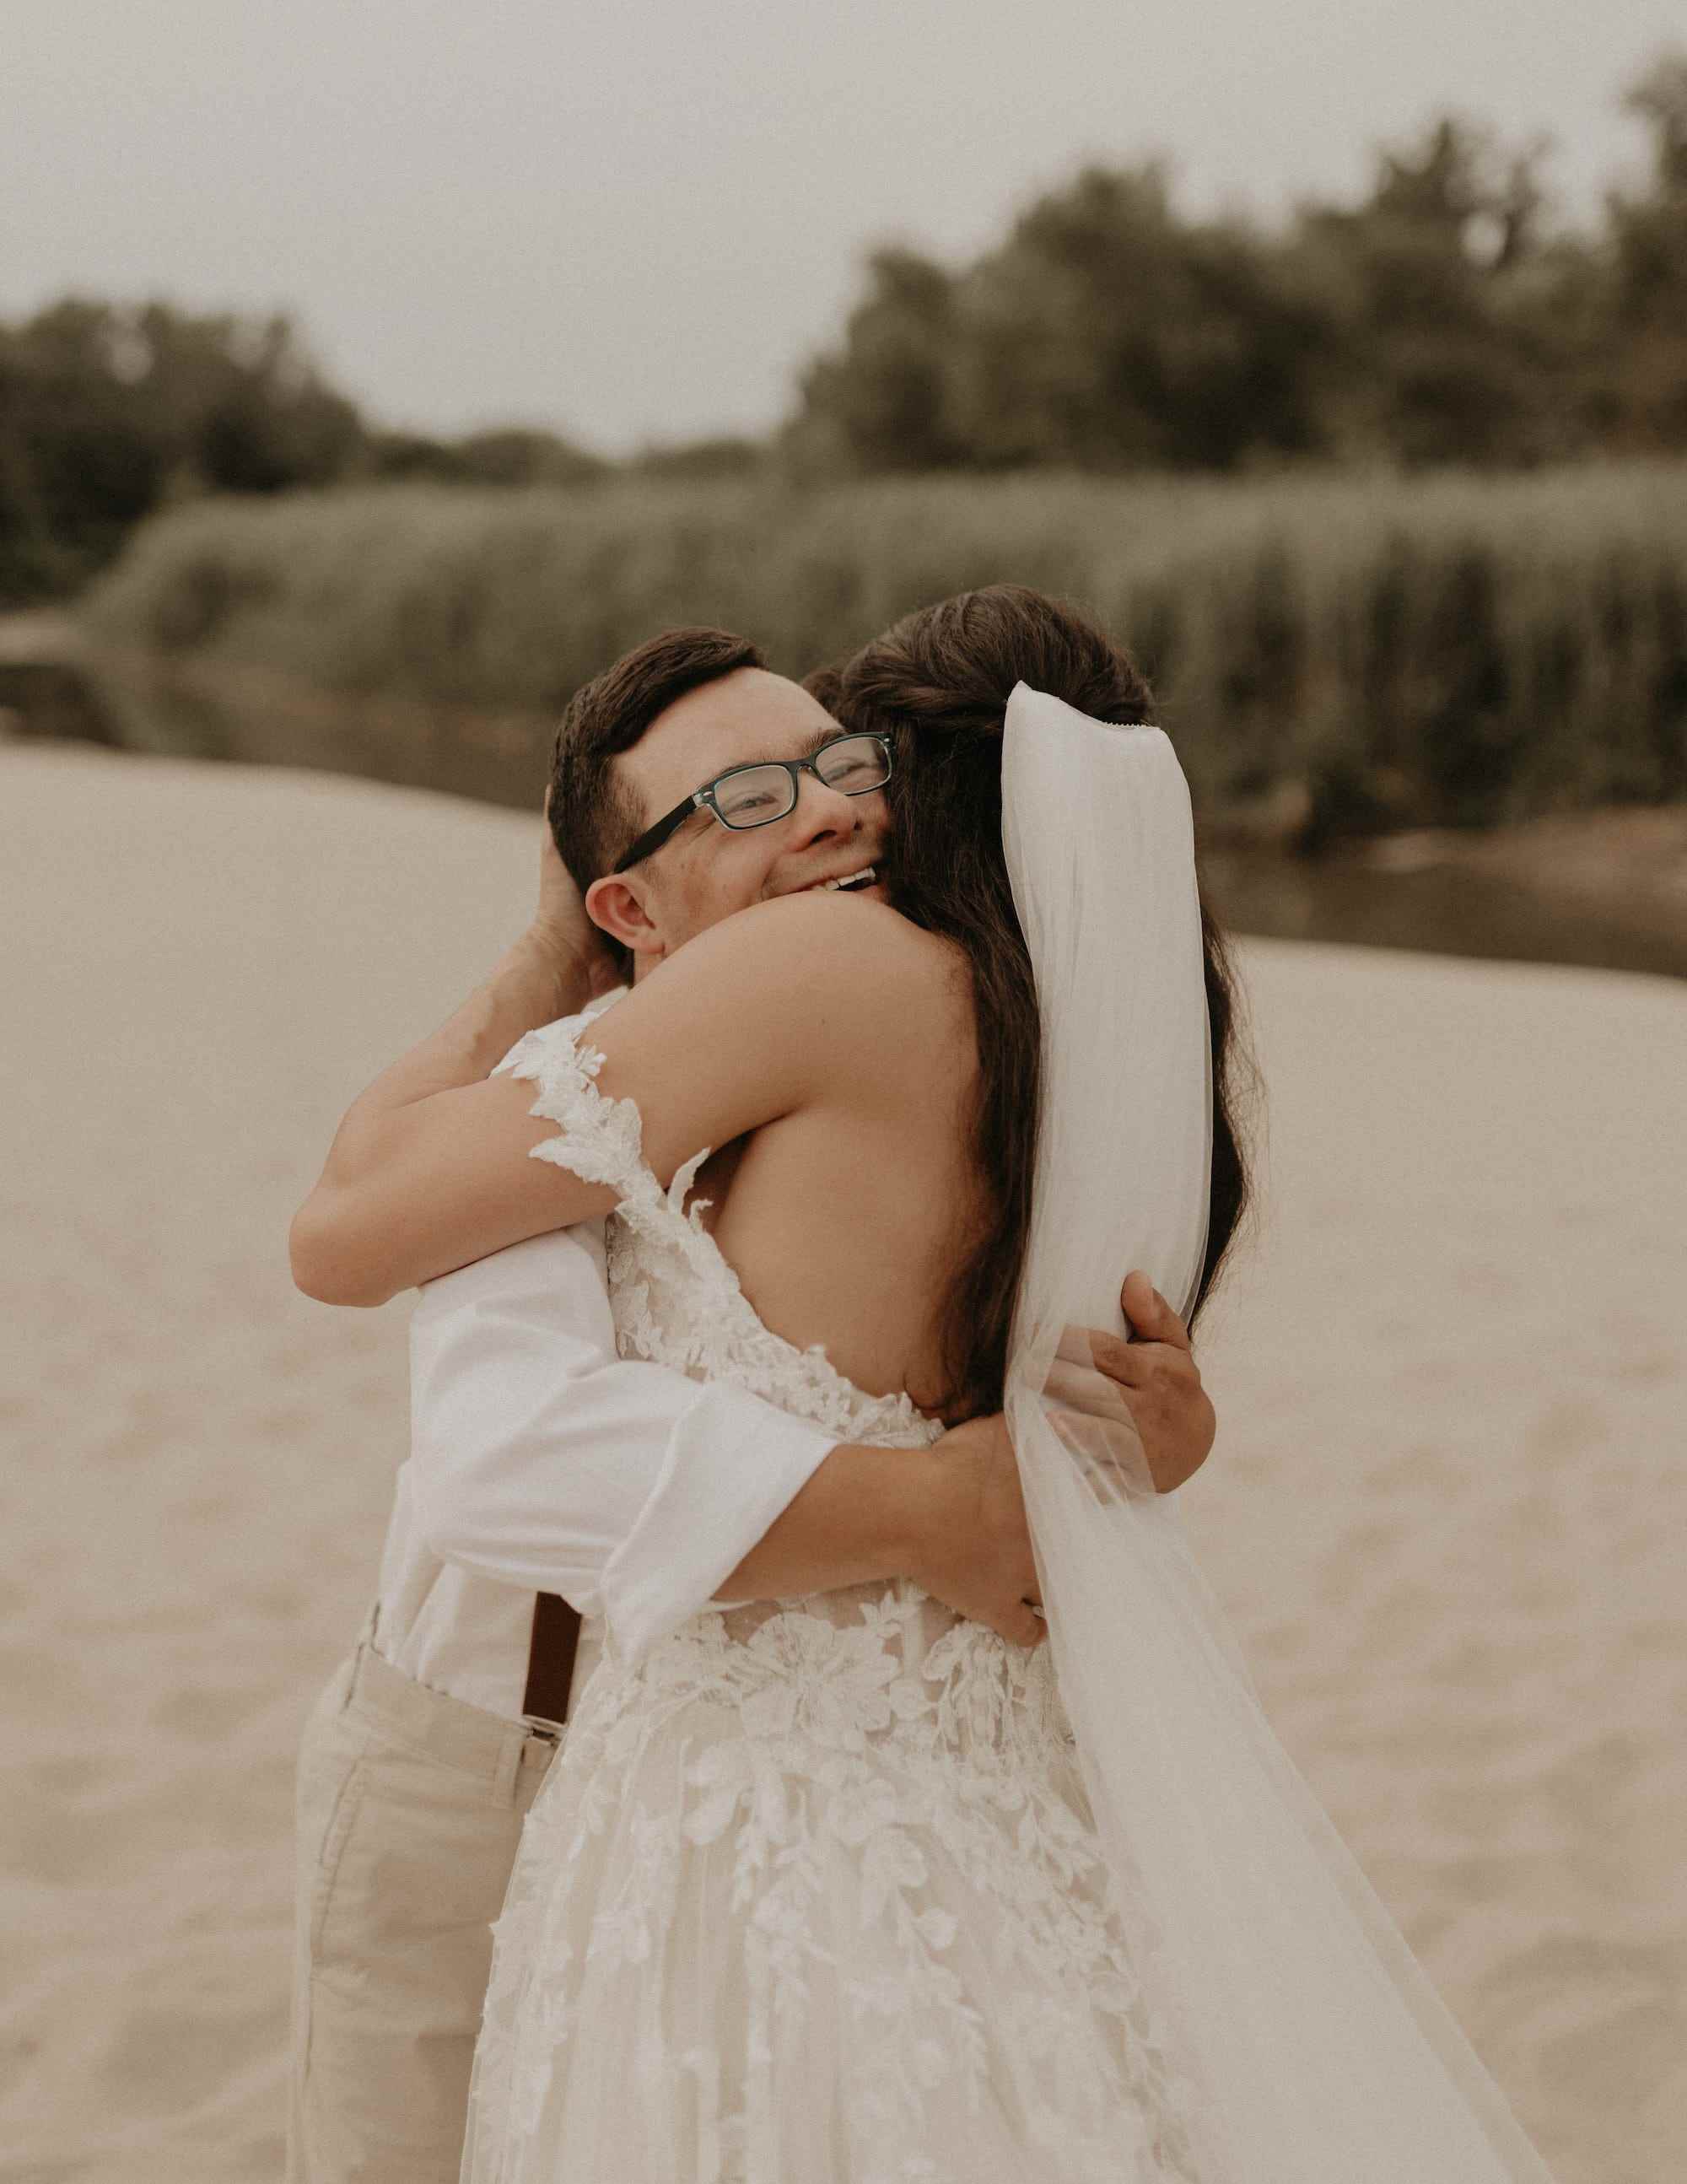 Ein Bruder umarmt seine Schwester, die ein Hochzeitskleid trägt, am Strand.